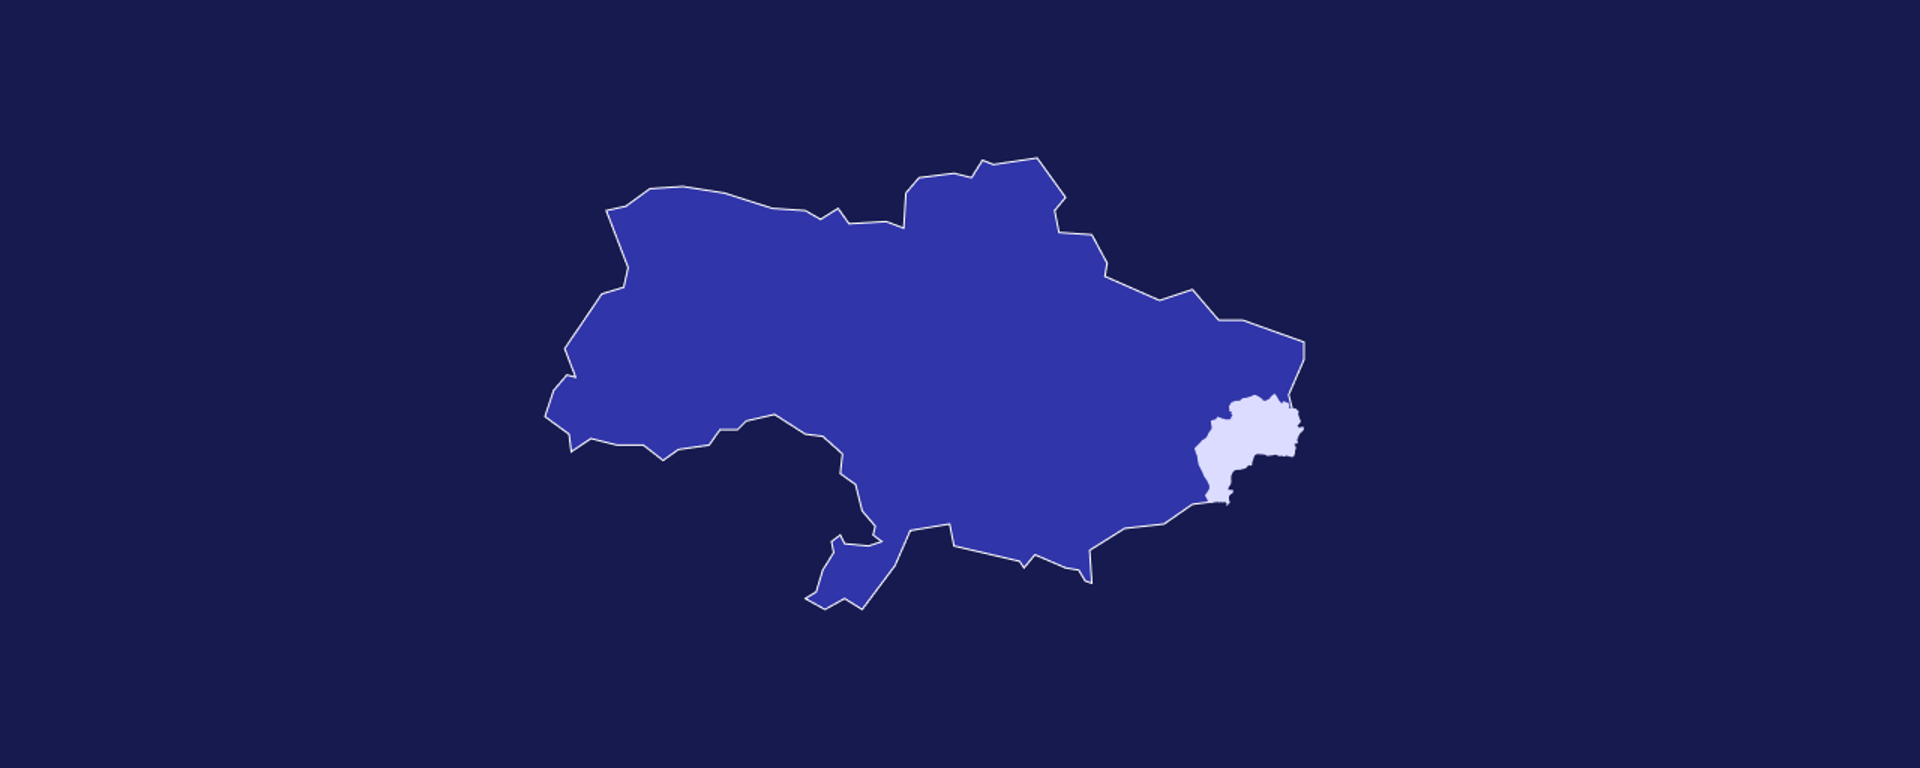 Operação da Rússia em Donbass: veja o mapa da Ucrânia e da região - Sputnik Brasil, 1920, 24.02.2022